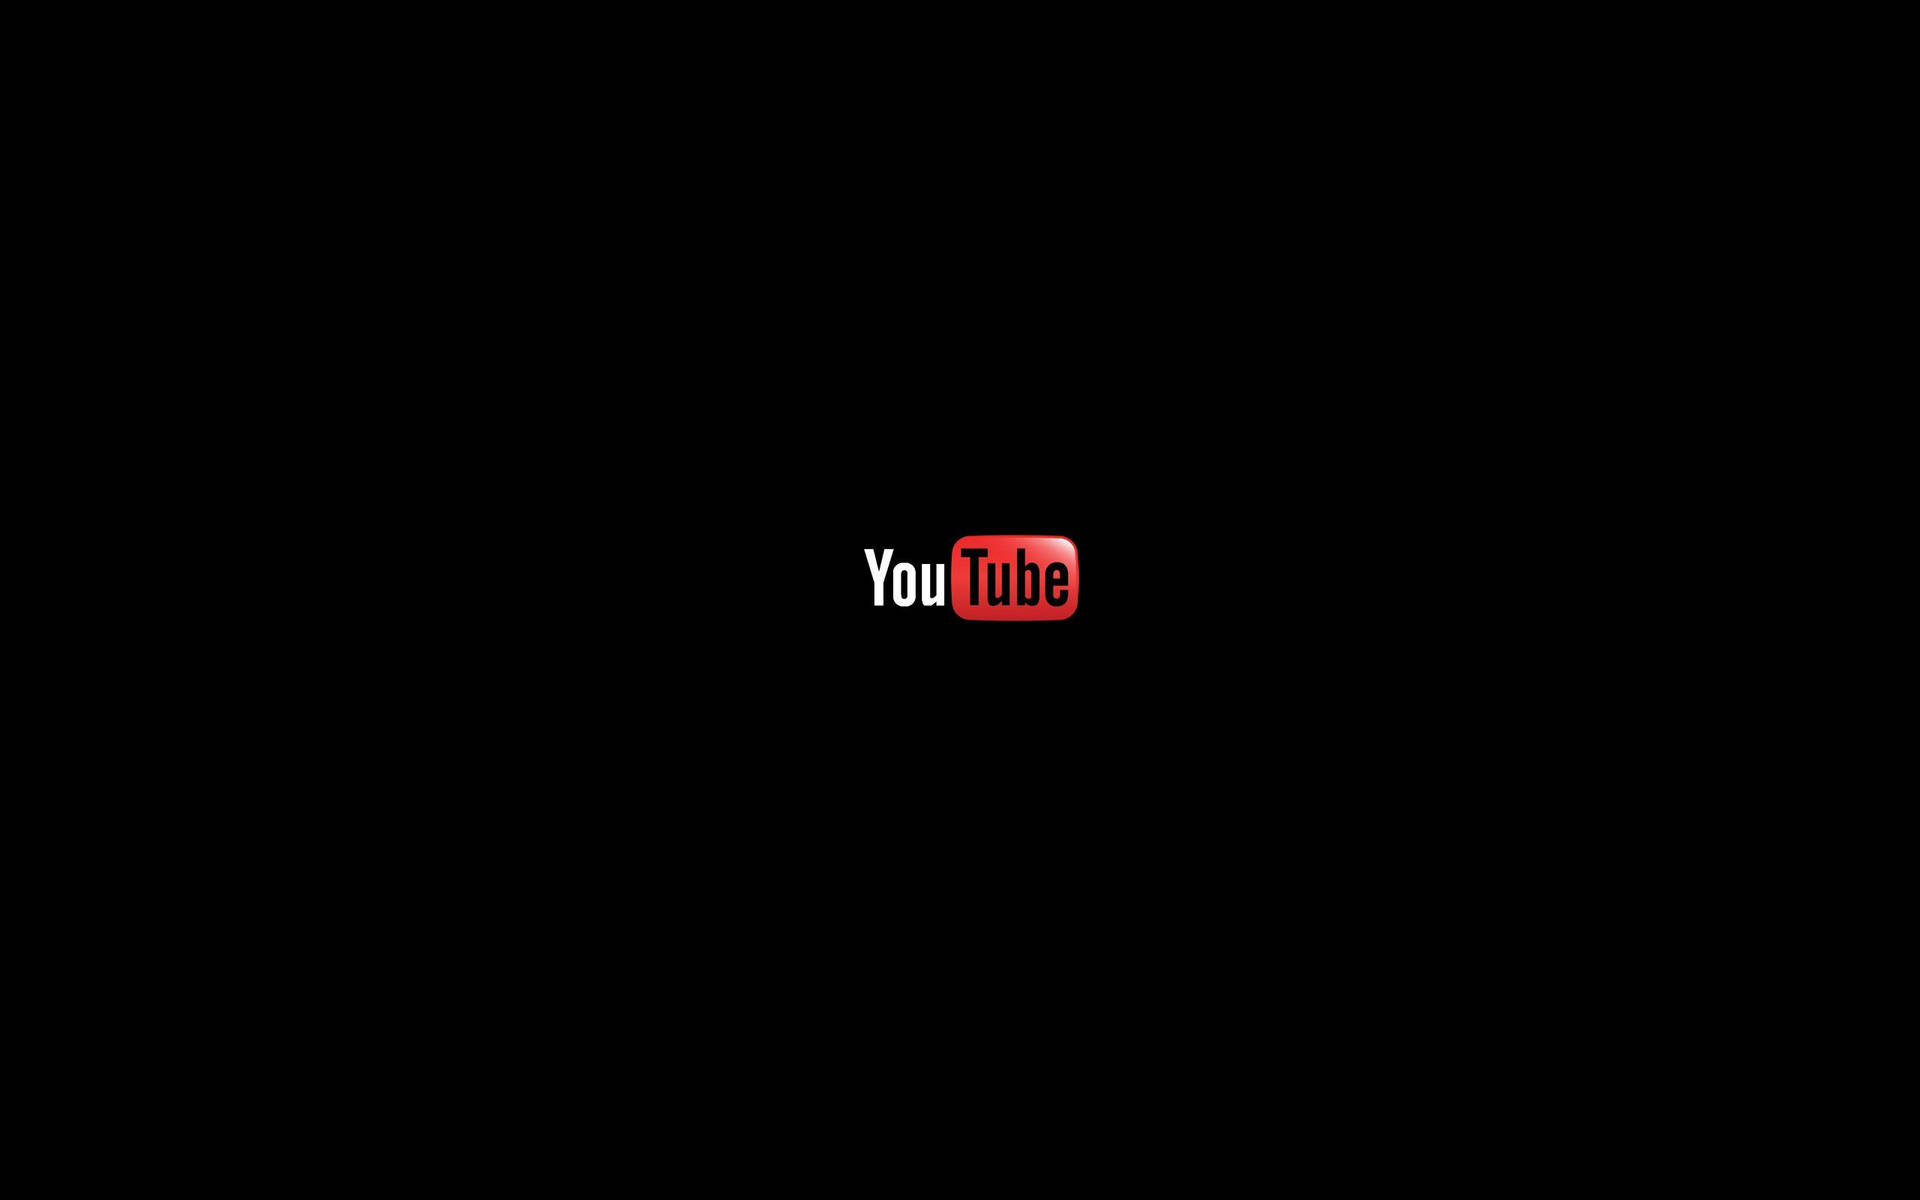 Aesthetic Youtube Minimalist Black Logo